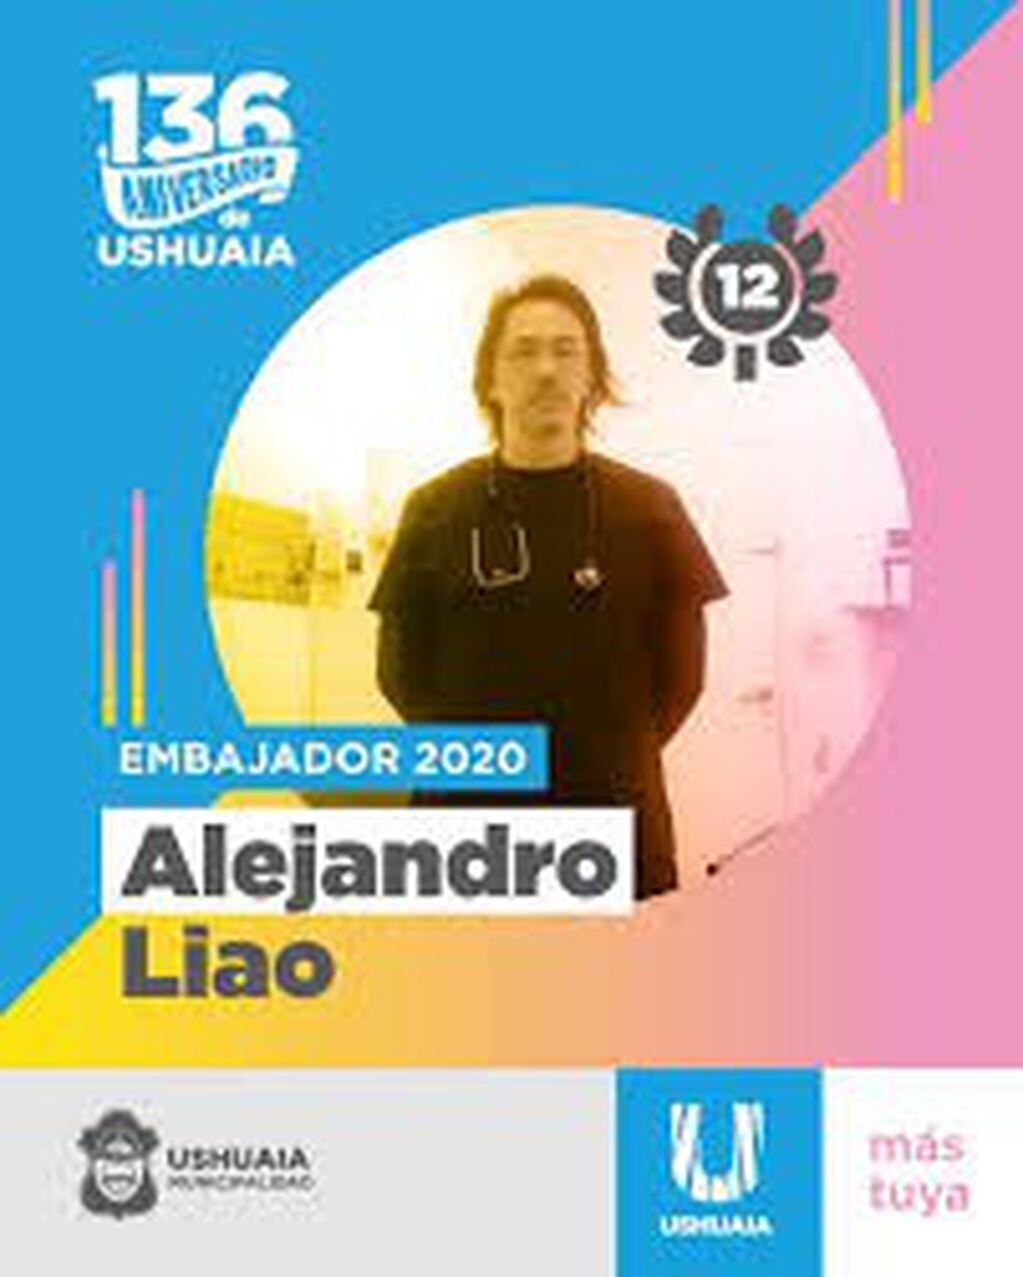 ALejandro Liao (web)